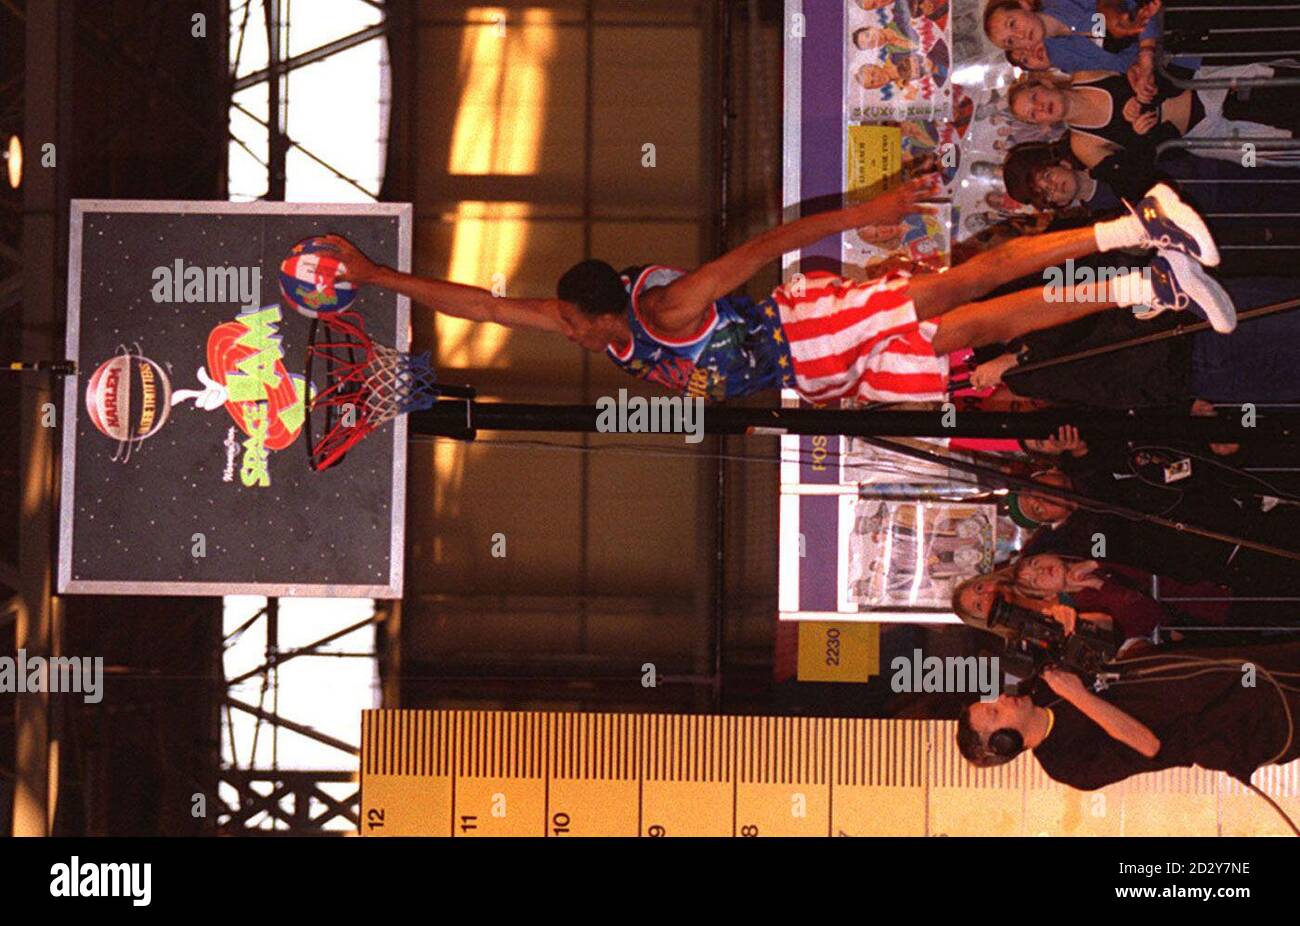 Fred 'Preacher' Smith von den Harlem Globetrotters erreicht, um das Guinness Buch der Weltrekorde heute (Samstag), im National Exhibition Centre, in der Nähe von Birmingham, mit dem höchsten jemals aufgezeichnet vertikalen Slam-Dunk von 11 Fuß 11 Zoll (3.63 Meter). Smith schlug den vorherigen Rekord um drei Zoll, während sein Team auf einer Tour durch Europa war. Foto von Charle Bibby/PA Stockfoto